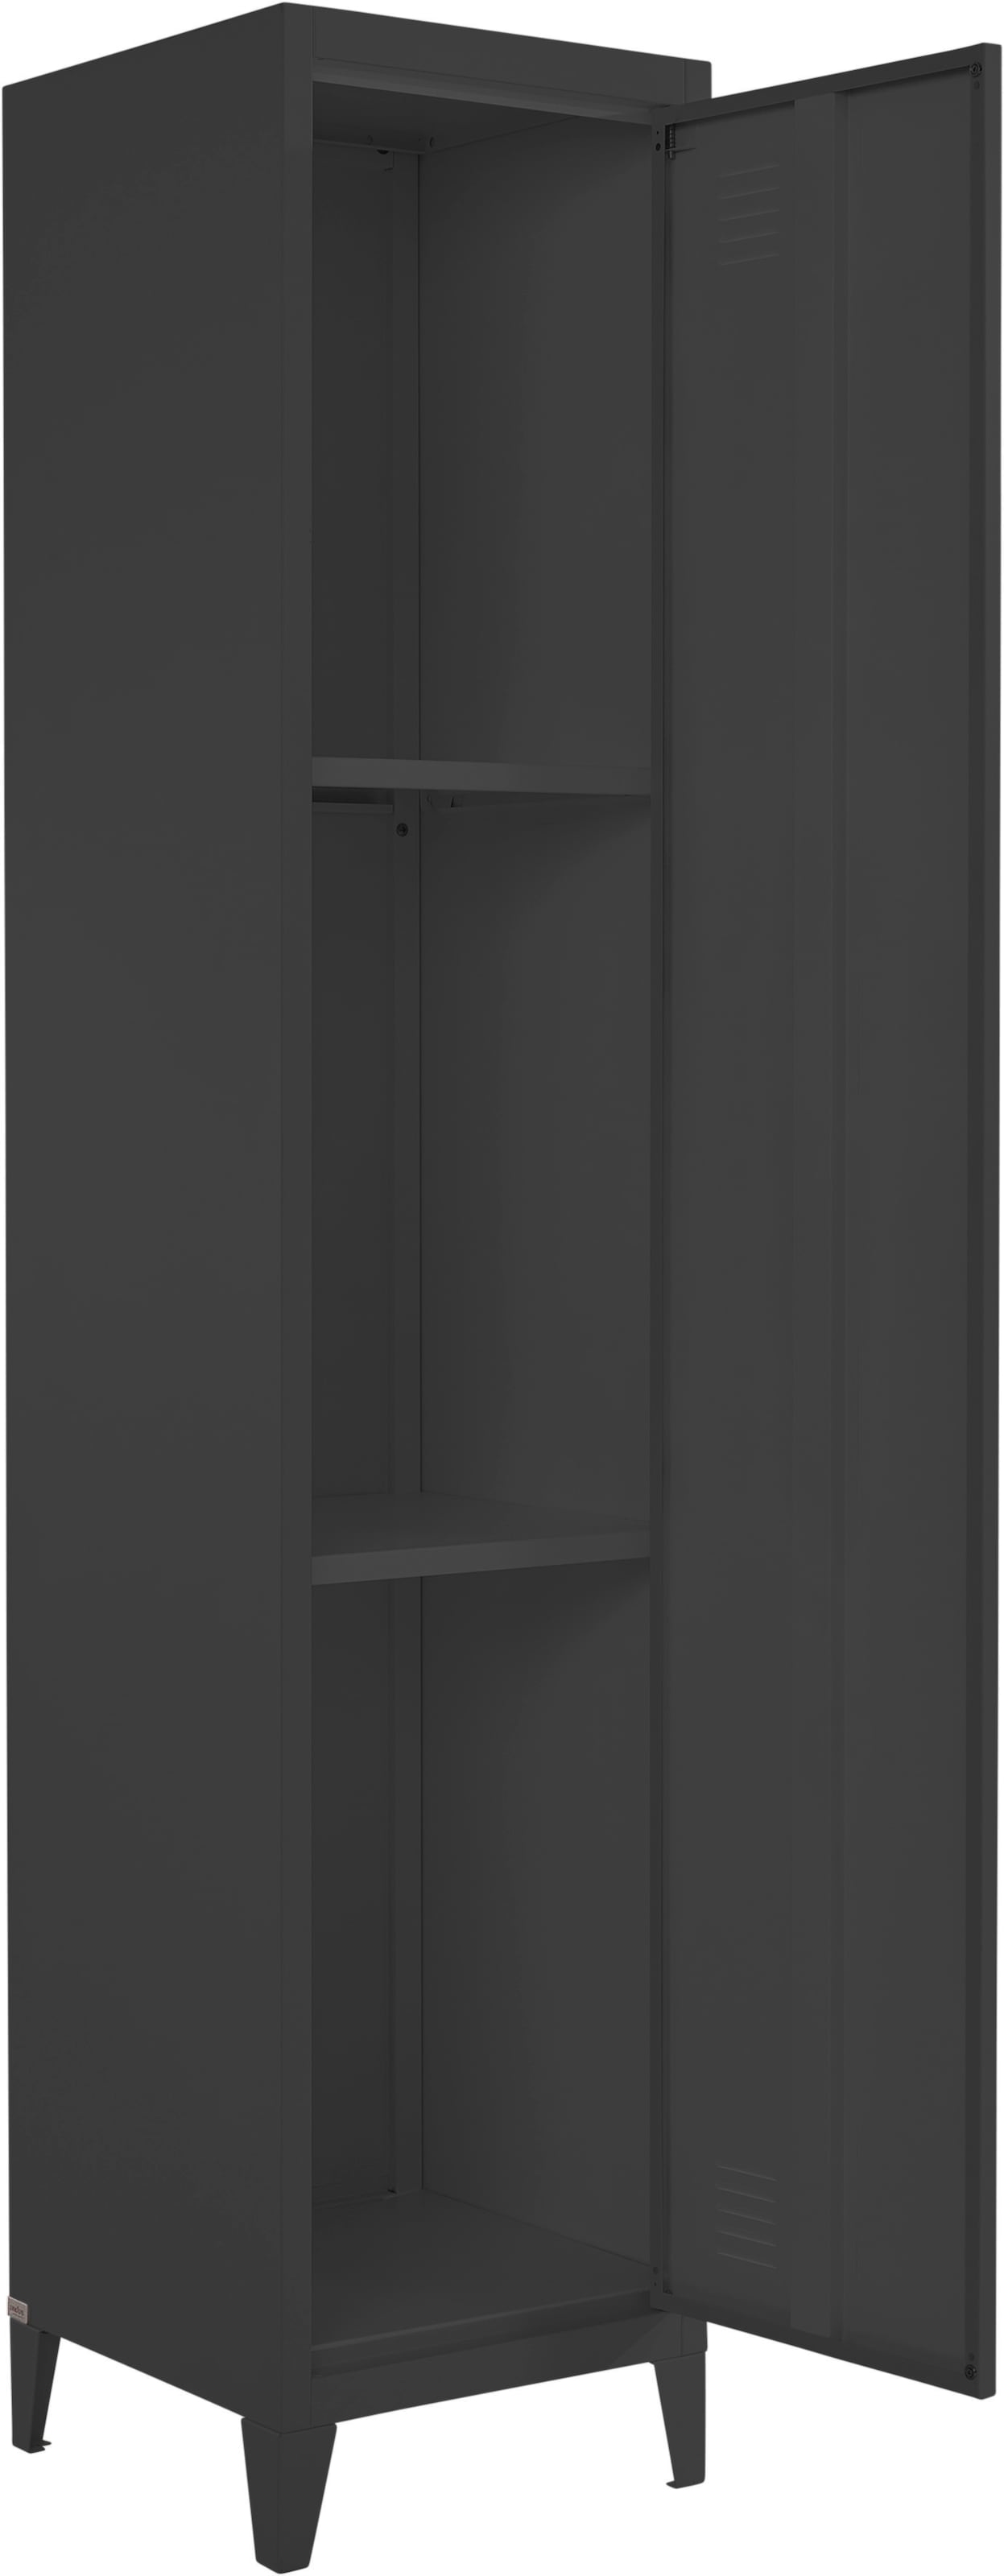 andas Hochschrank »Jensjorg«, Hochschrank aus Metall, 2 x Einlegeböden hinter der Tür, Höhe 180 cm